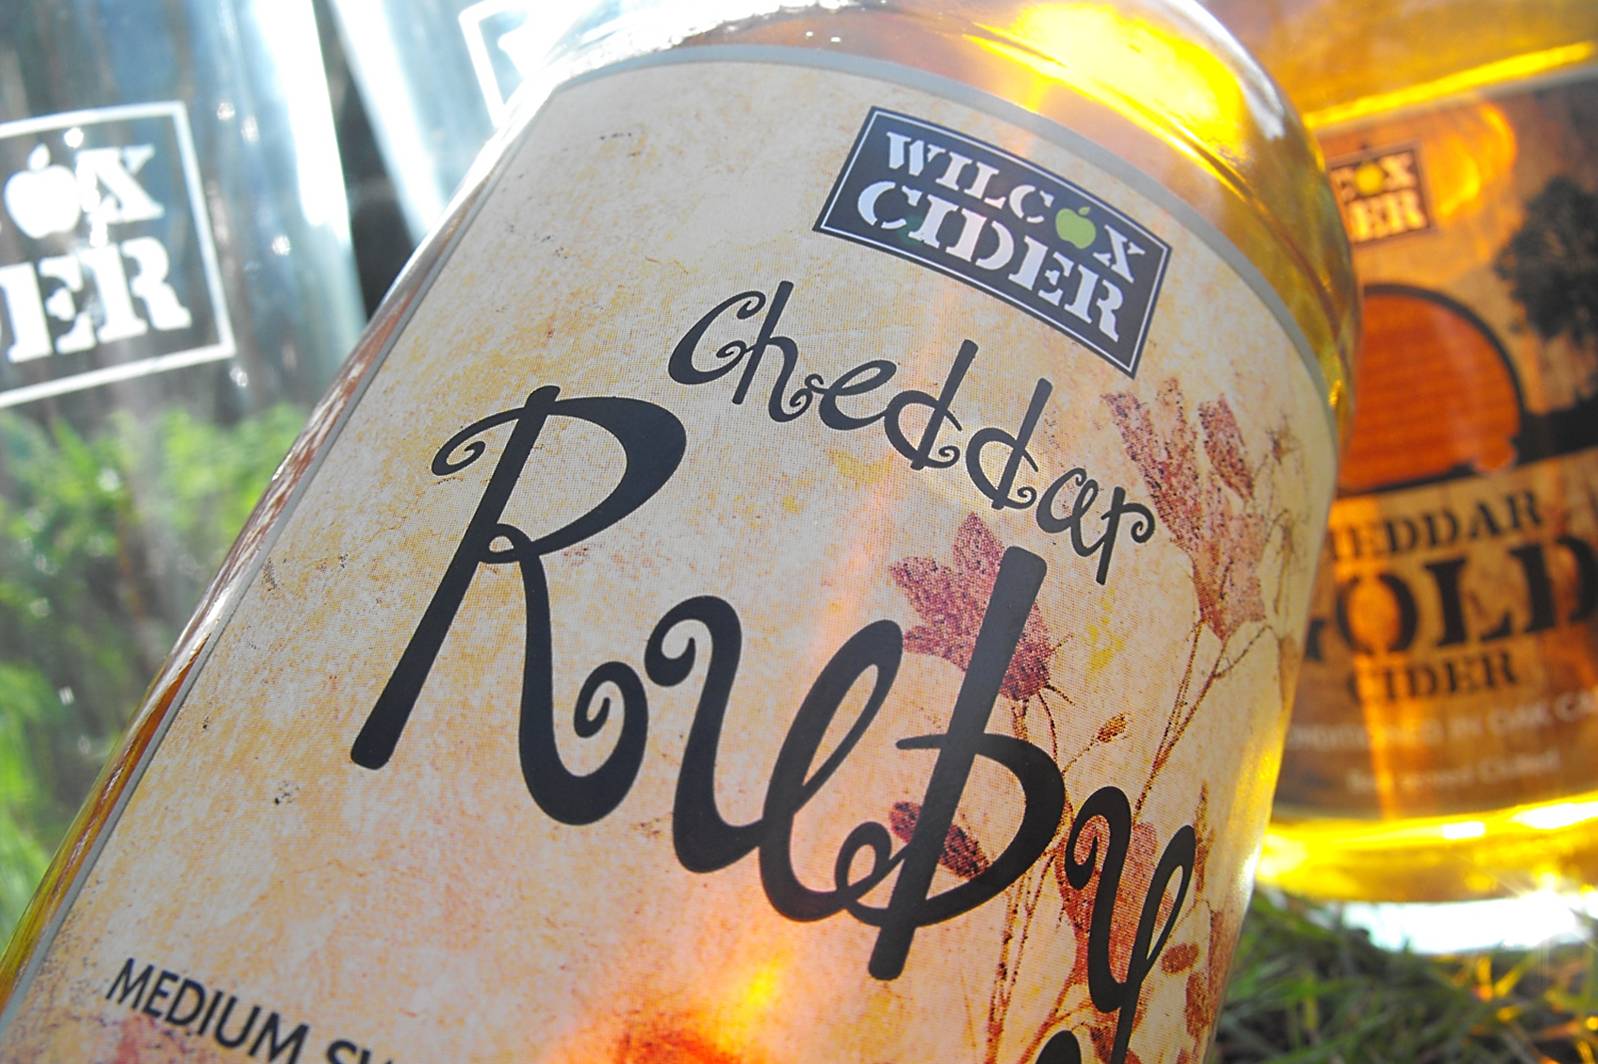 wilcox cider bottle label design